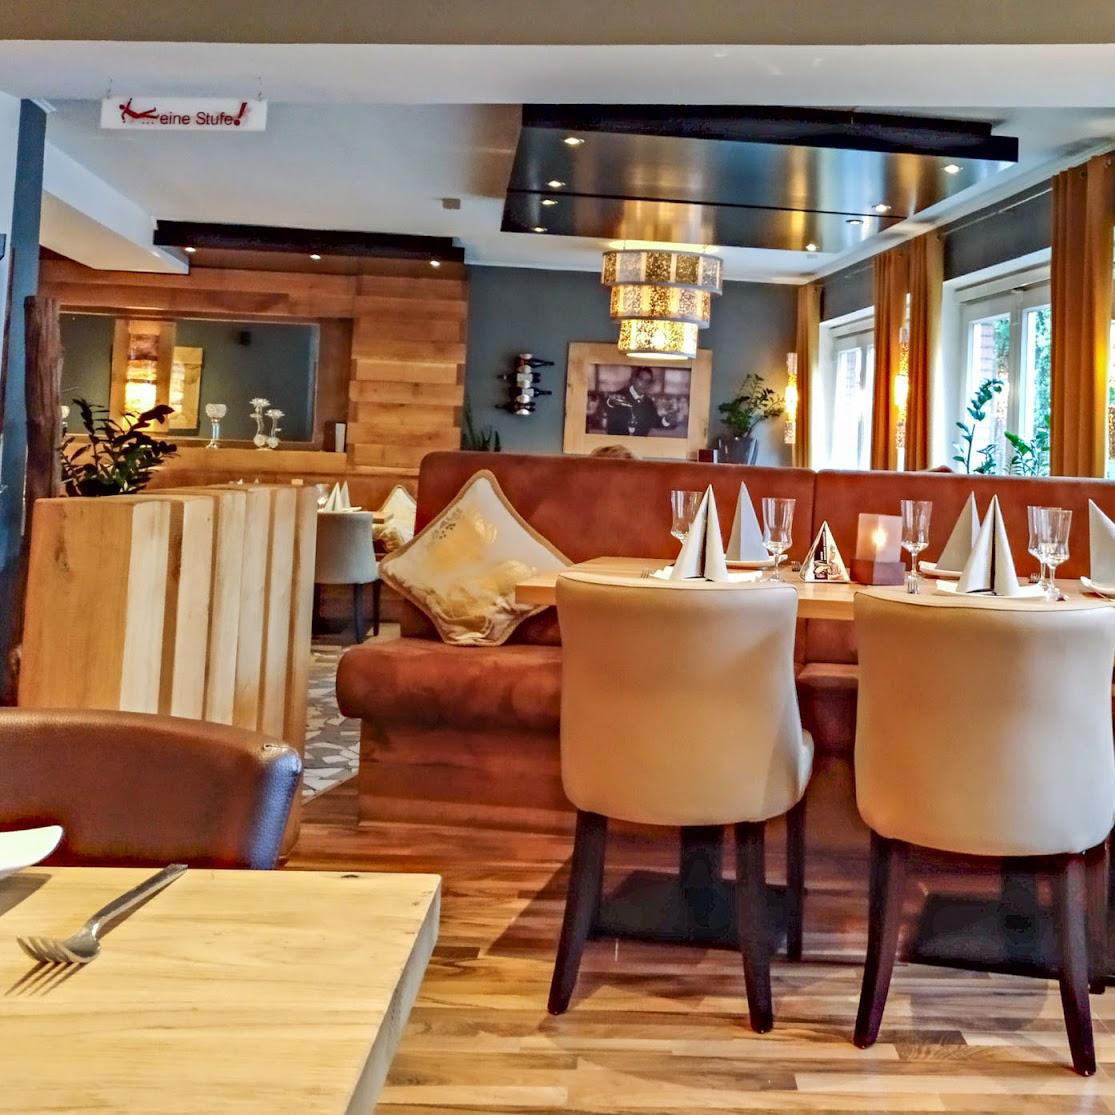 Restaurant "Ristorante da Portofino" in Nordhorn